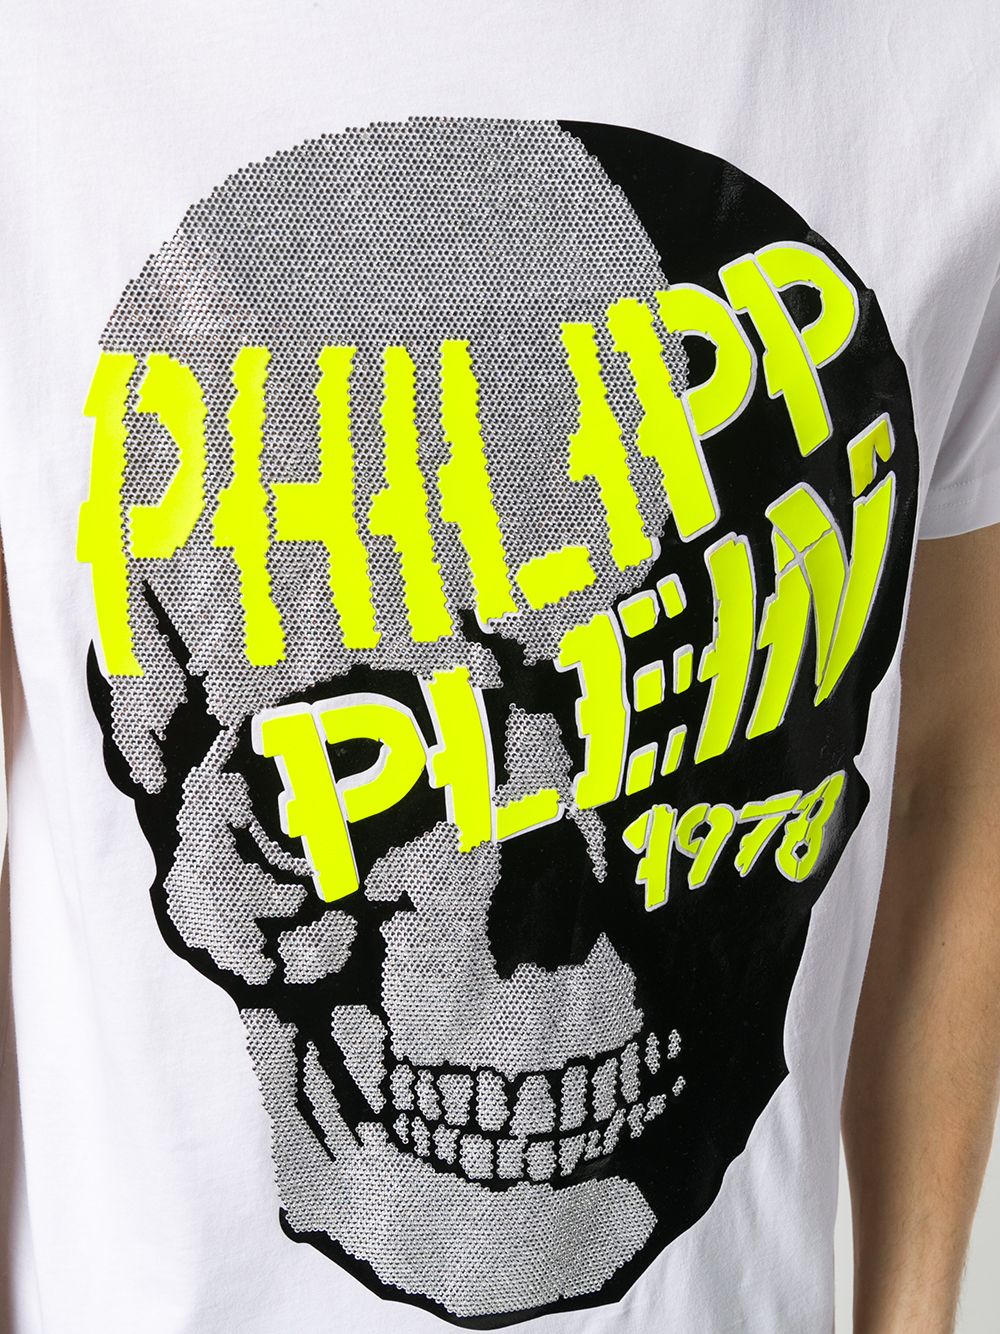 фото Philipp plein футболка с декором skull